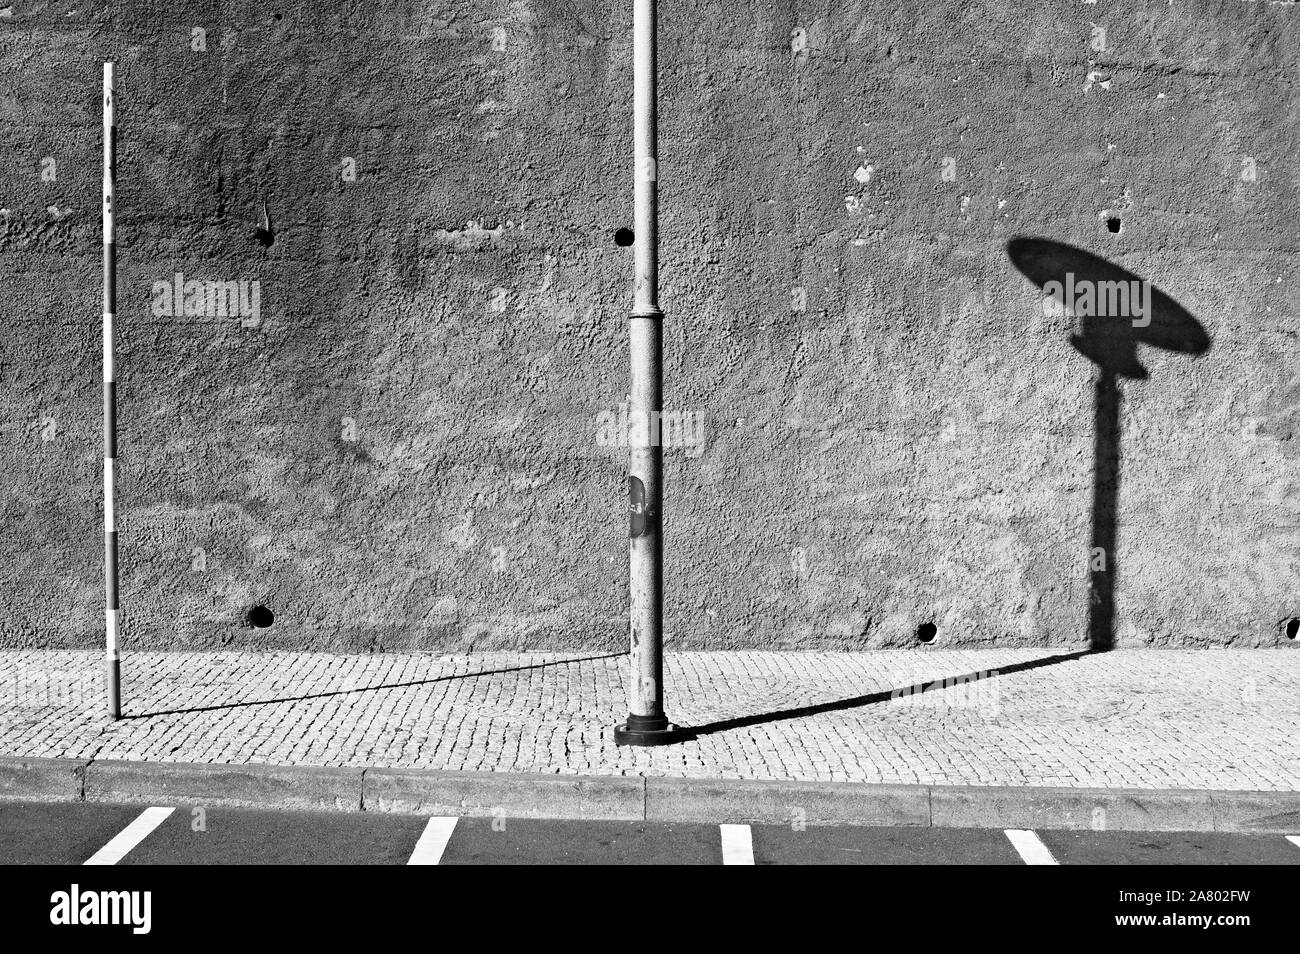 Pôle légères isolées dans le trottoir près de parking rangées sur une route pavée (Madère, Portugal, Europe) Banque D'Images